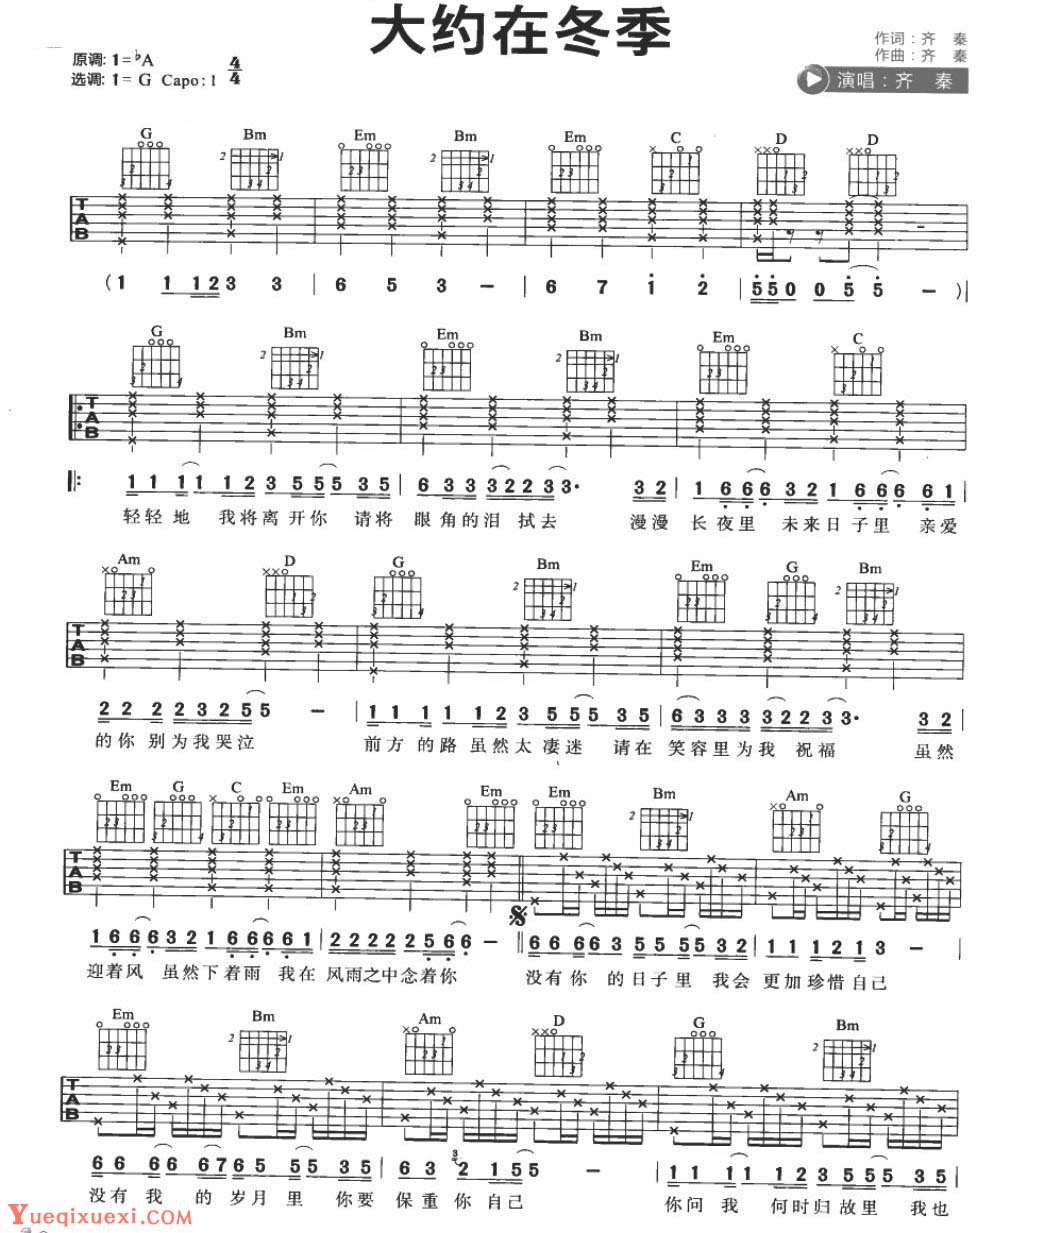 吉他弹唱流行歌曲《红豆》C大调/四四拍/分解和弦-指弹吉他谱 - 乐器学习网